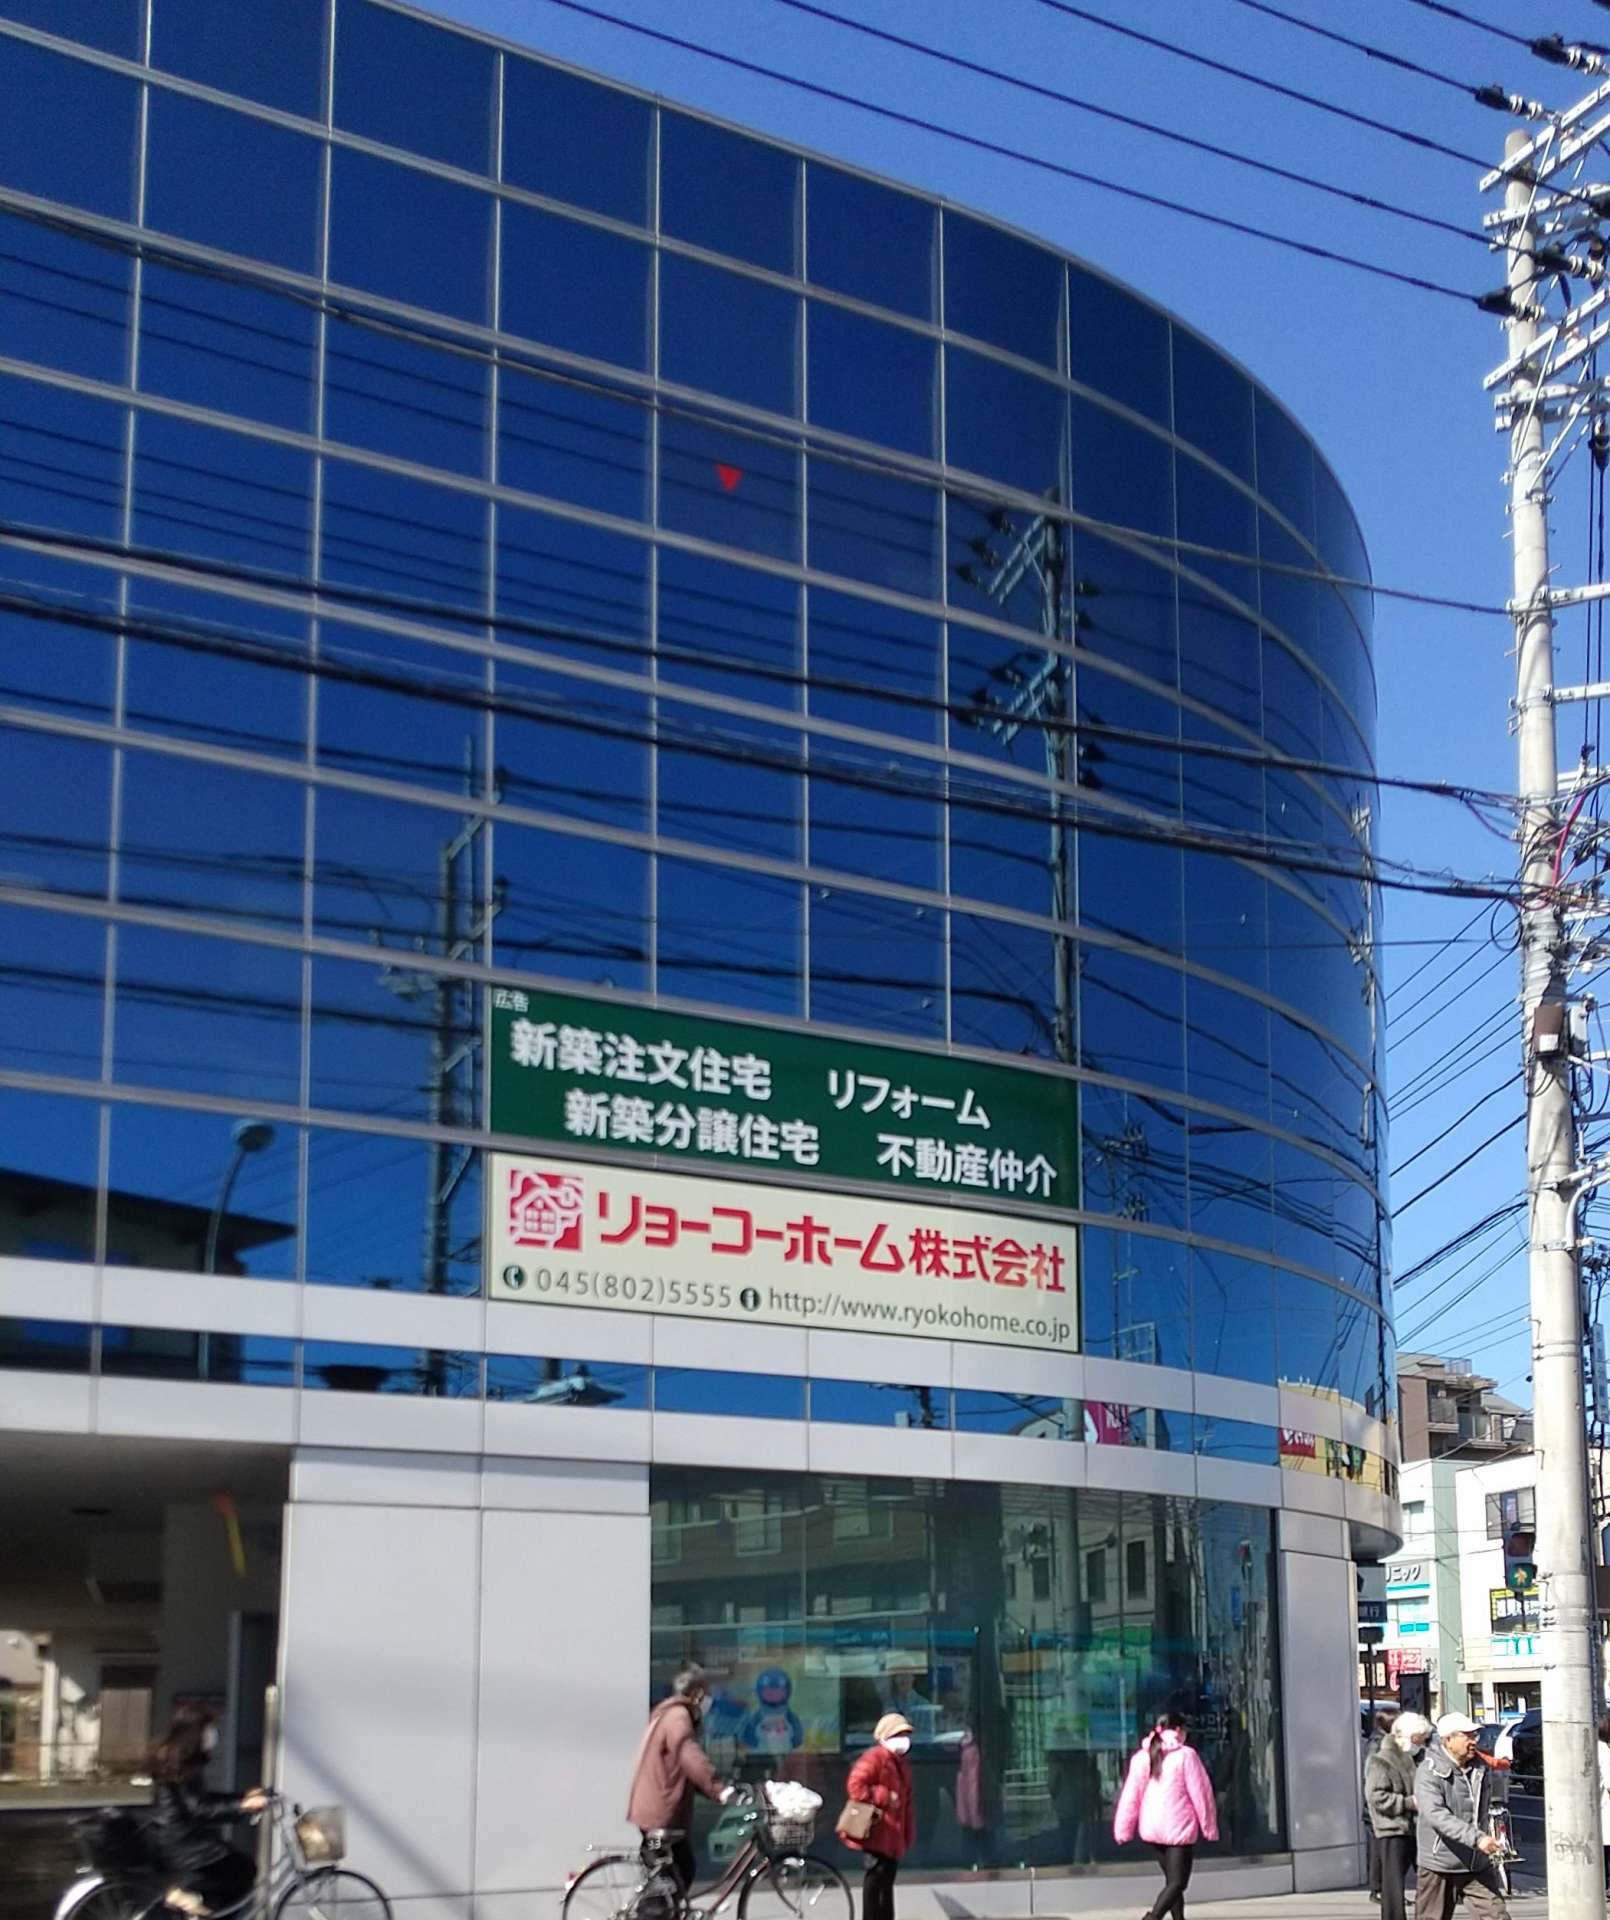 横浜銀行和泉支店ビルに『リョーコーホーム』の看板